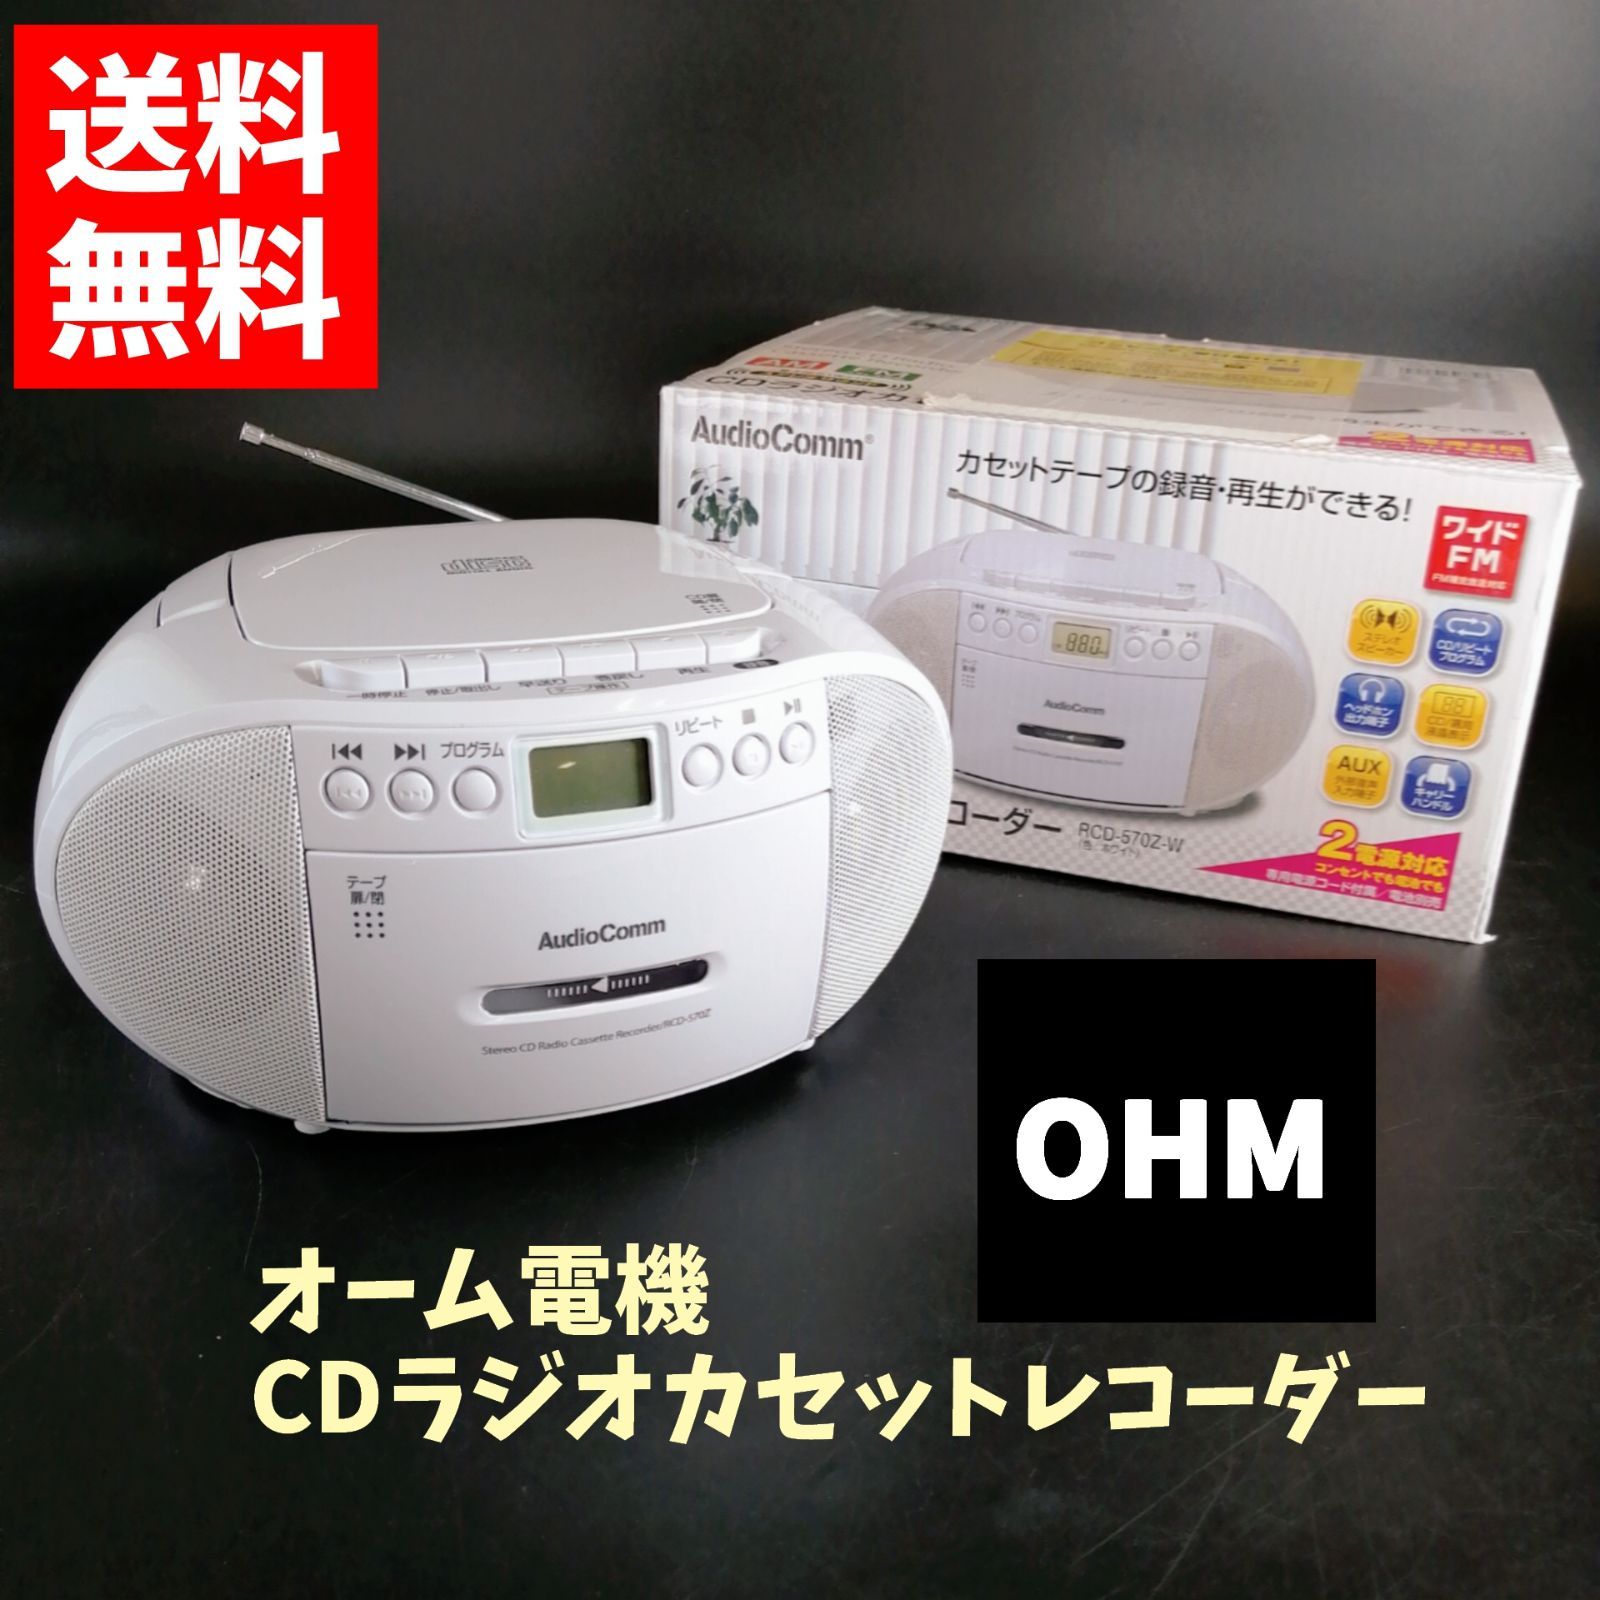 オーム電機 OHM AudioComm CDラジオカセットレコーダー ホワイト RCD